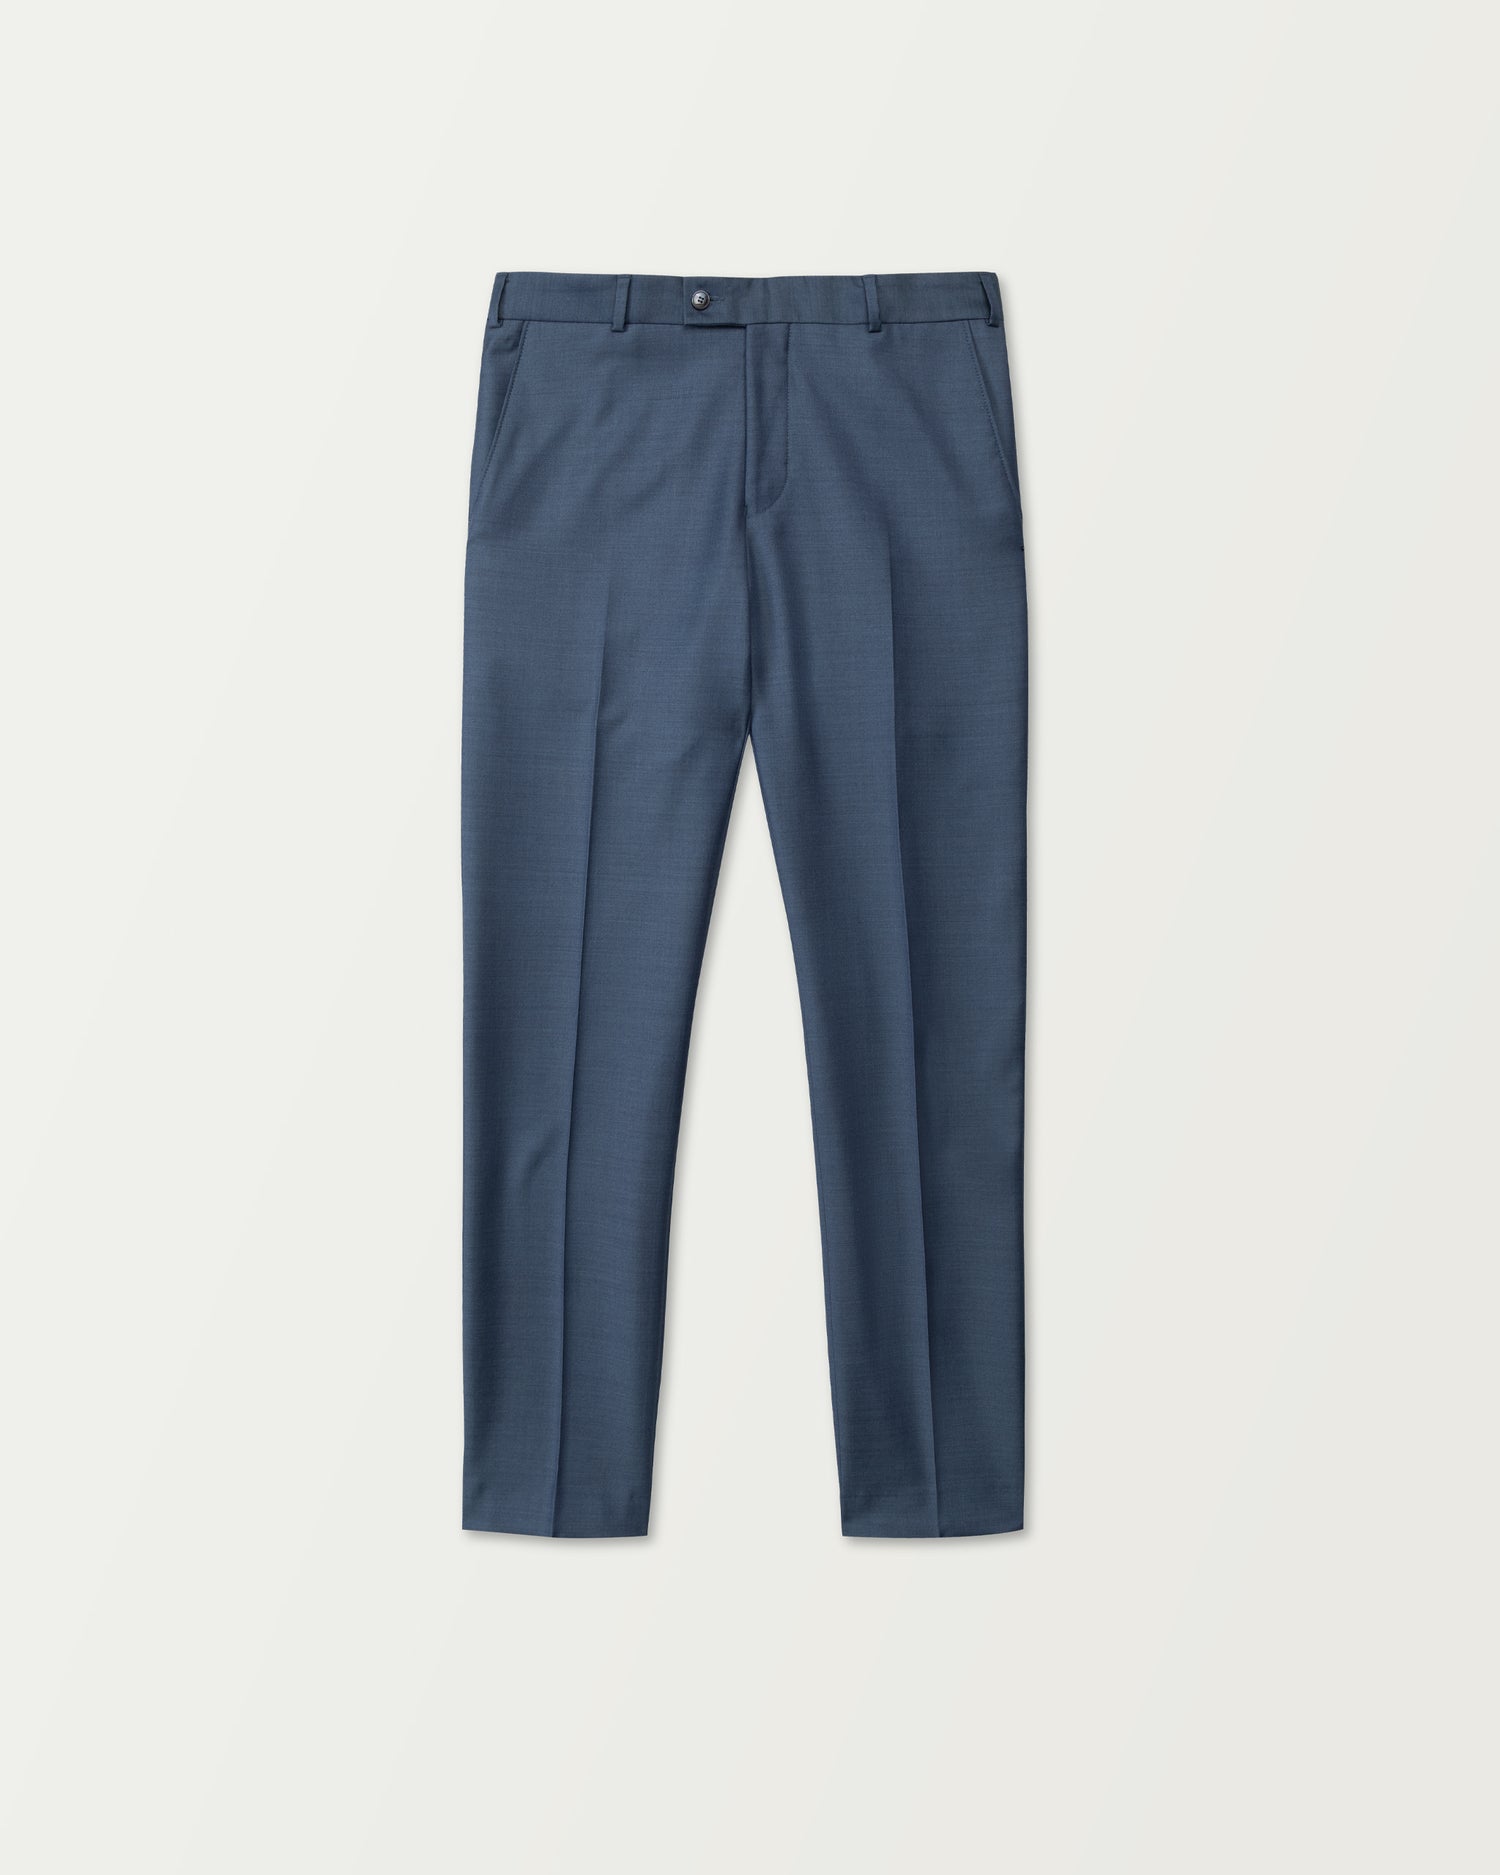 Blue Premium Wool Trousers in Slim Fit (8454920274250)